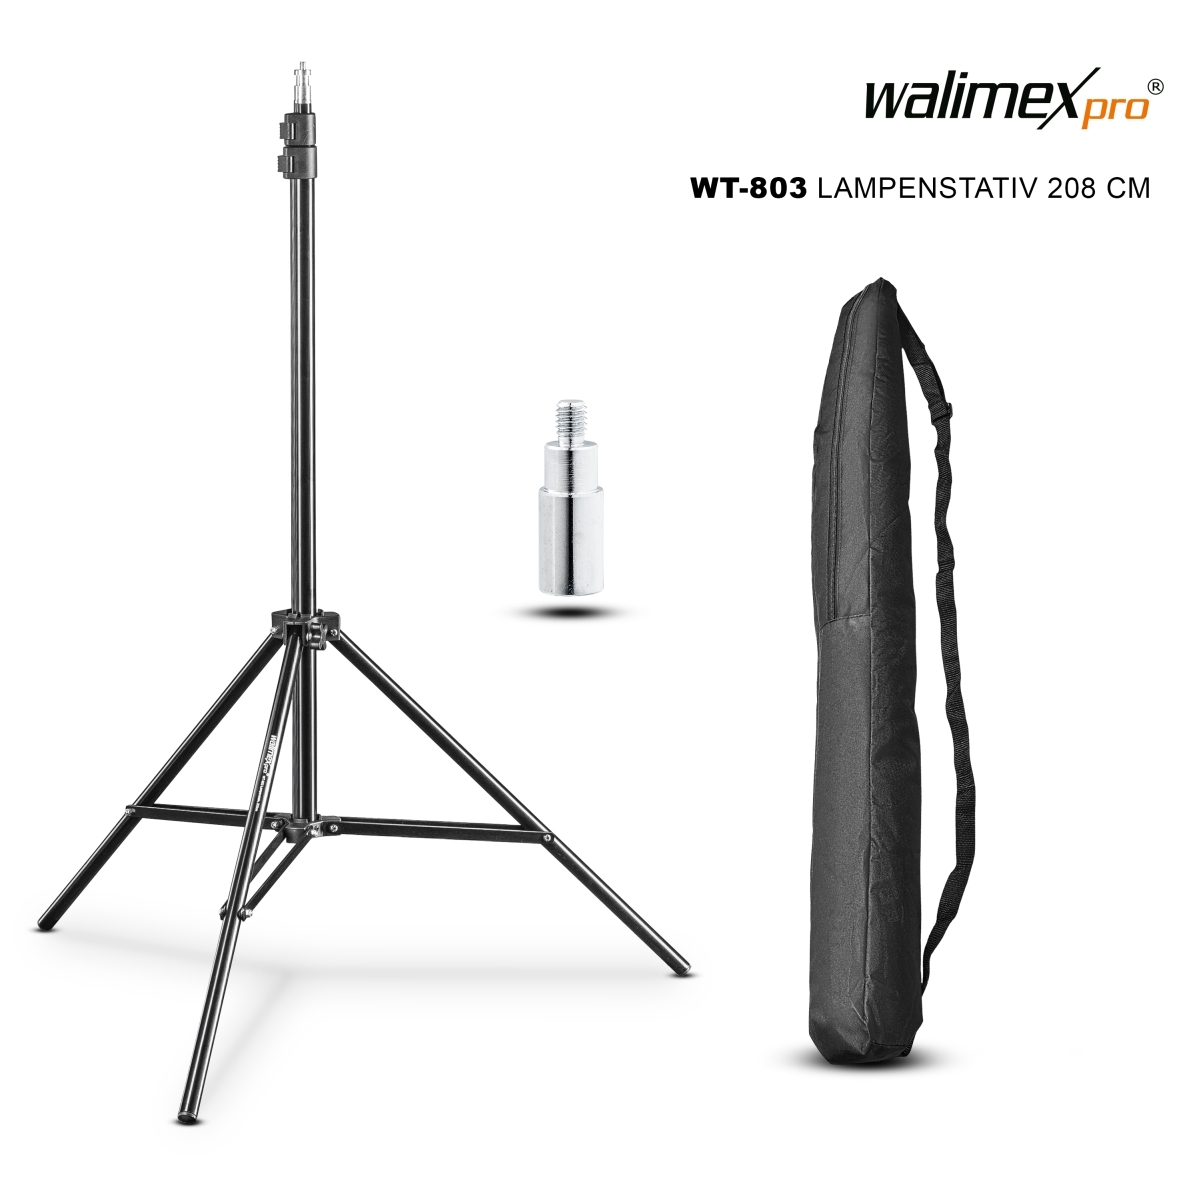 Walimex pro WT-803 Lampenstativ 208 cm inkl. Tasche und...